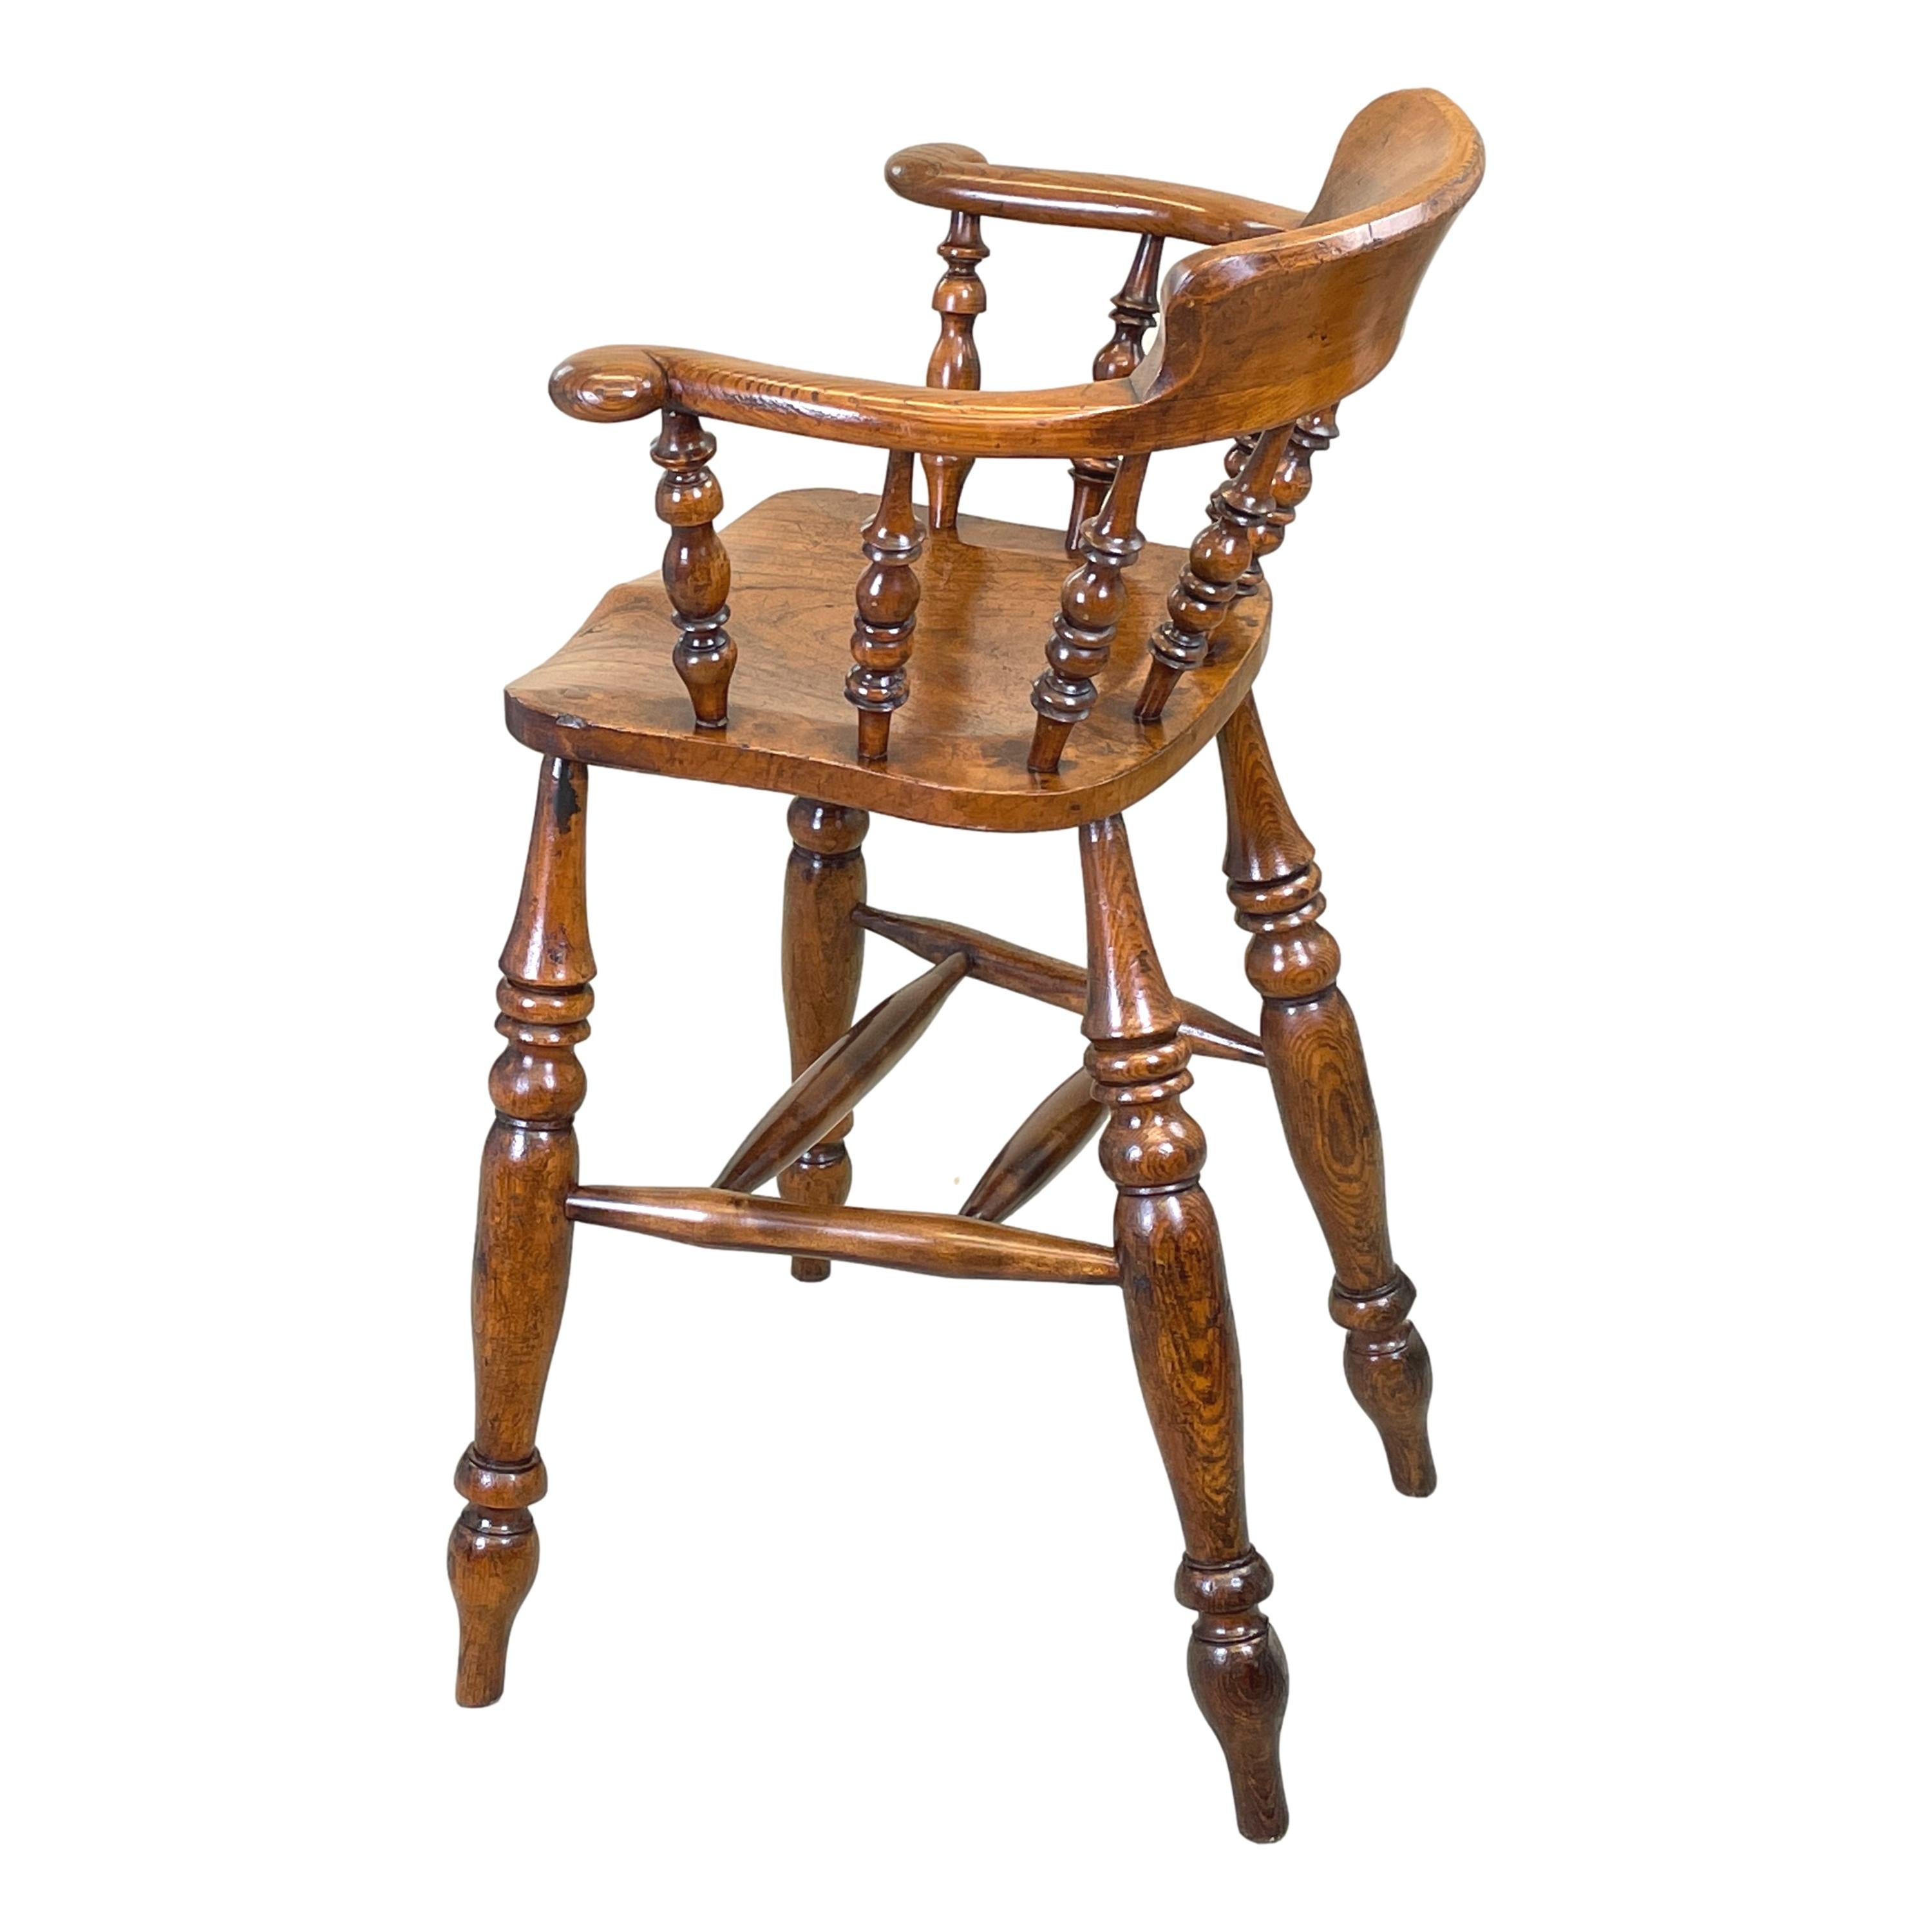 Une très rare pièce de campagne anglaise du milieu du 19ème siècle
Chaise de taverne, ou chaise haute de bureau, dotée d'une élégante
Fuseaux verticaux tournés vers l'arrière en arc
Siège en forme de selle superbement figuré et relevé
Sur